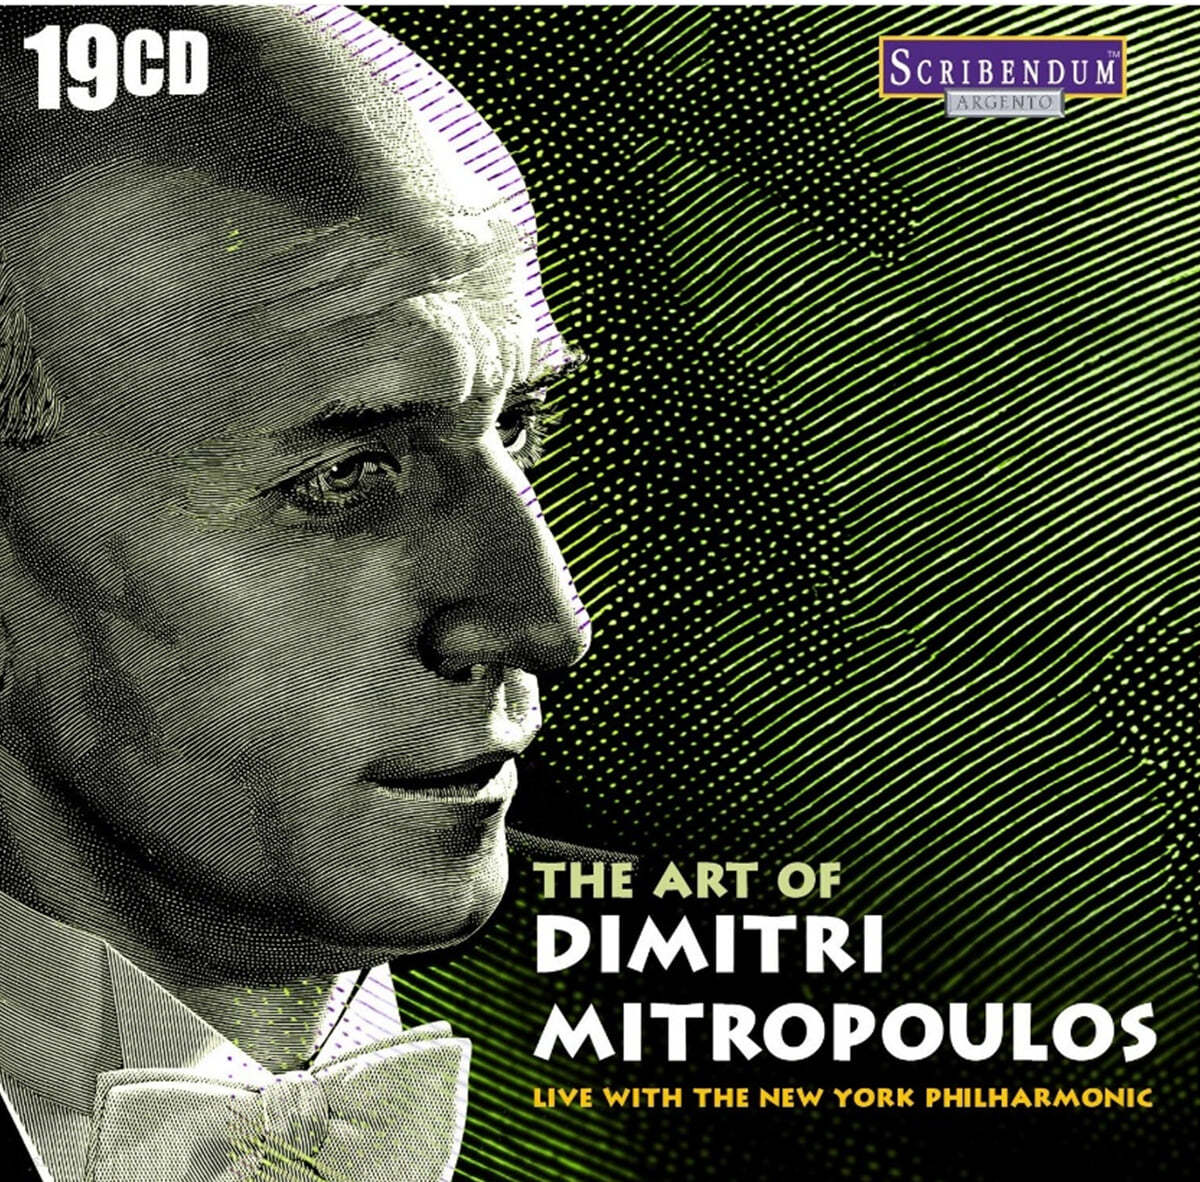 드미트리 미트로풀로스 뉴욕 필하모닉 오케스트라 라이브 (The Art of Dimitri Mitropolous live with the New York Philharmonic)